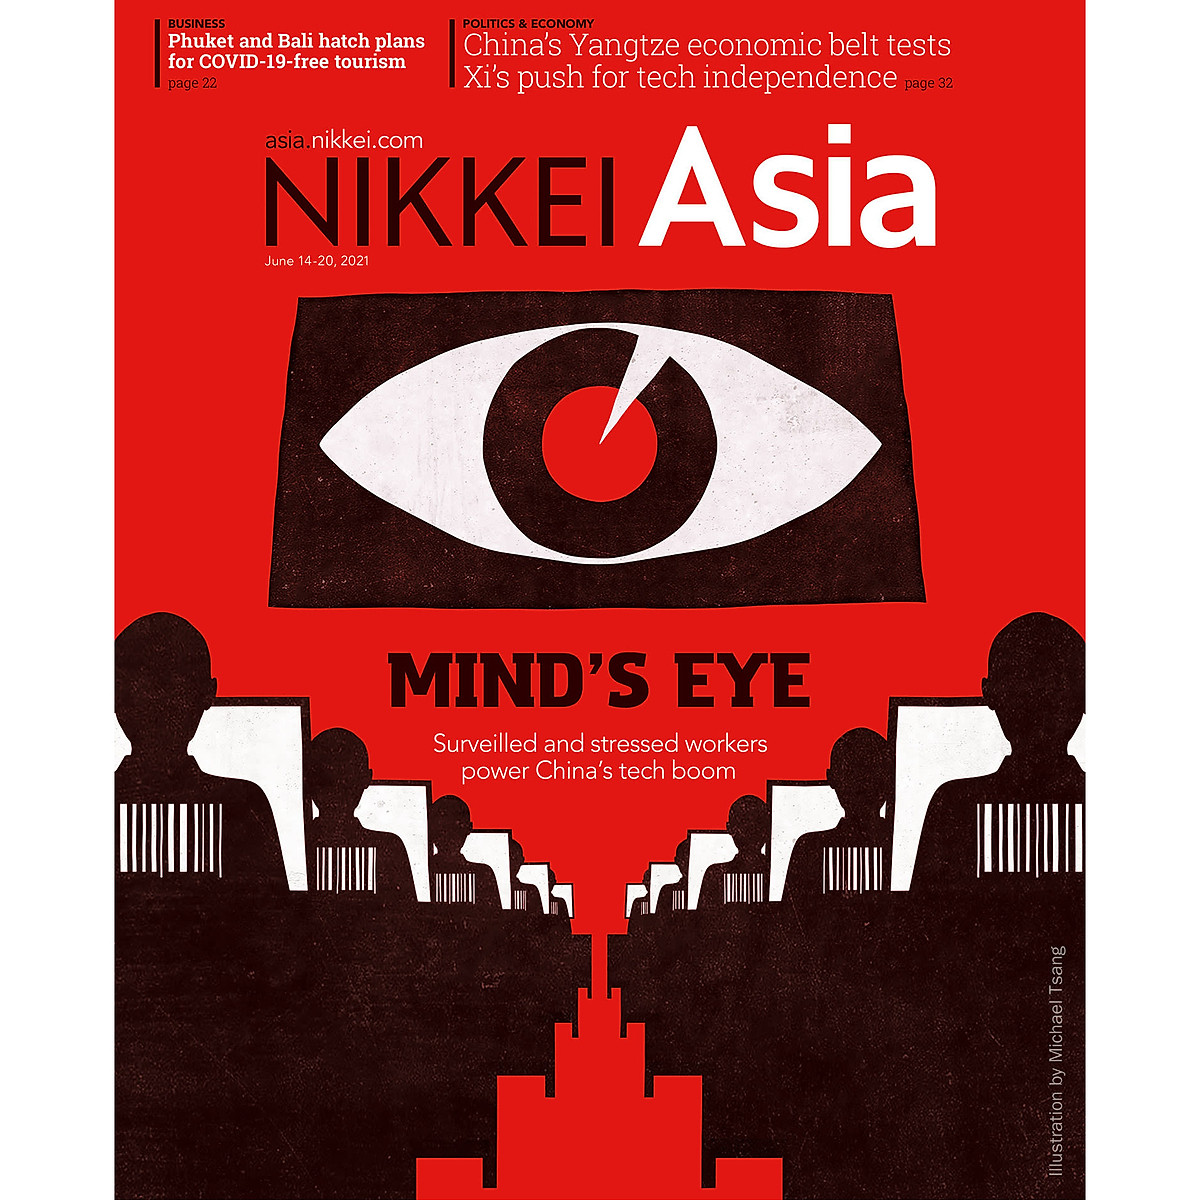 Nikkei Asian Review: Nikkei Asia - 2021: MIND'S EYE - 24.21 tạp chí kinh tế nước ngoài, nhập khẩu từ Singapore